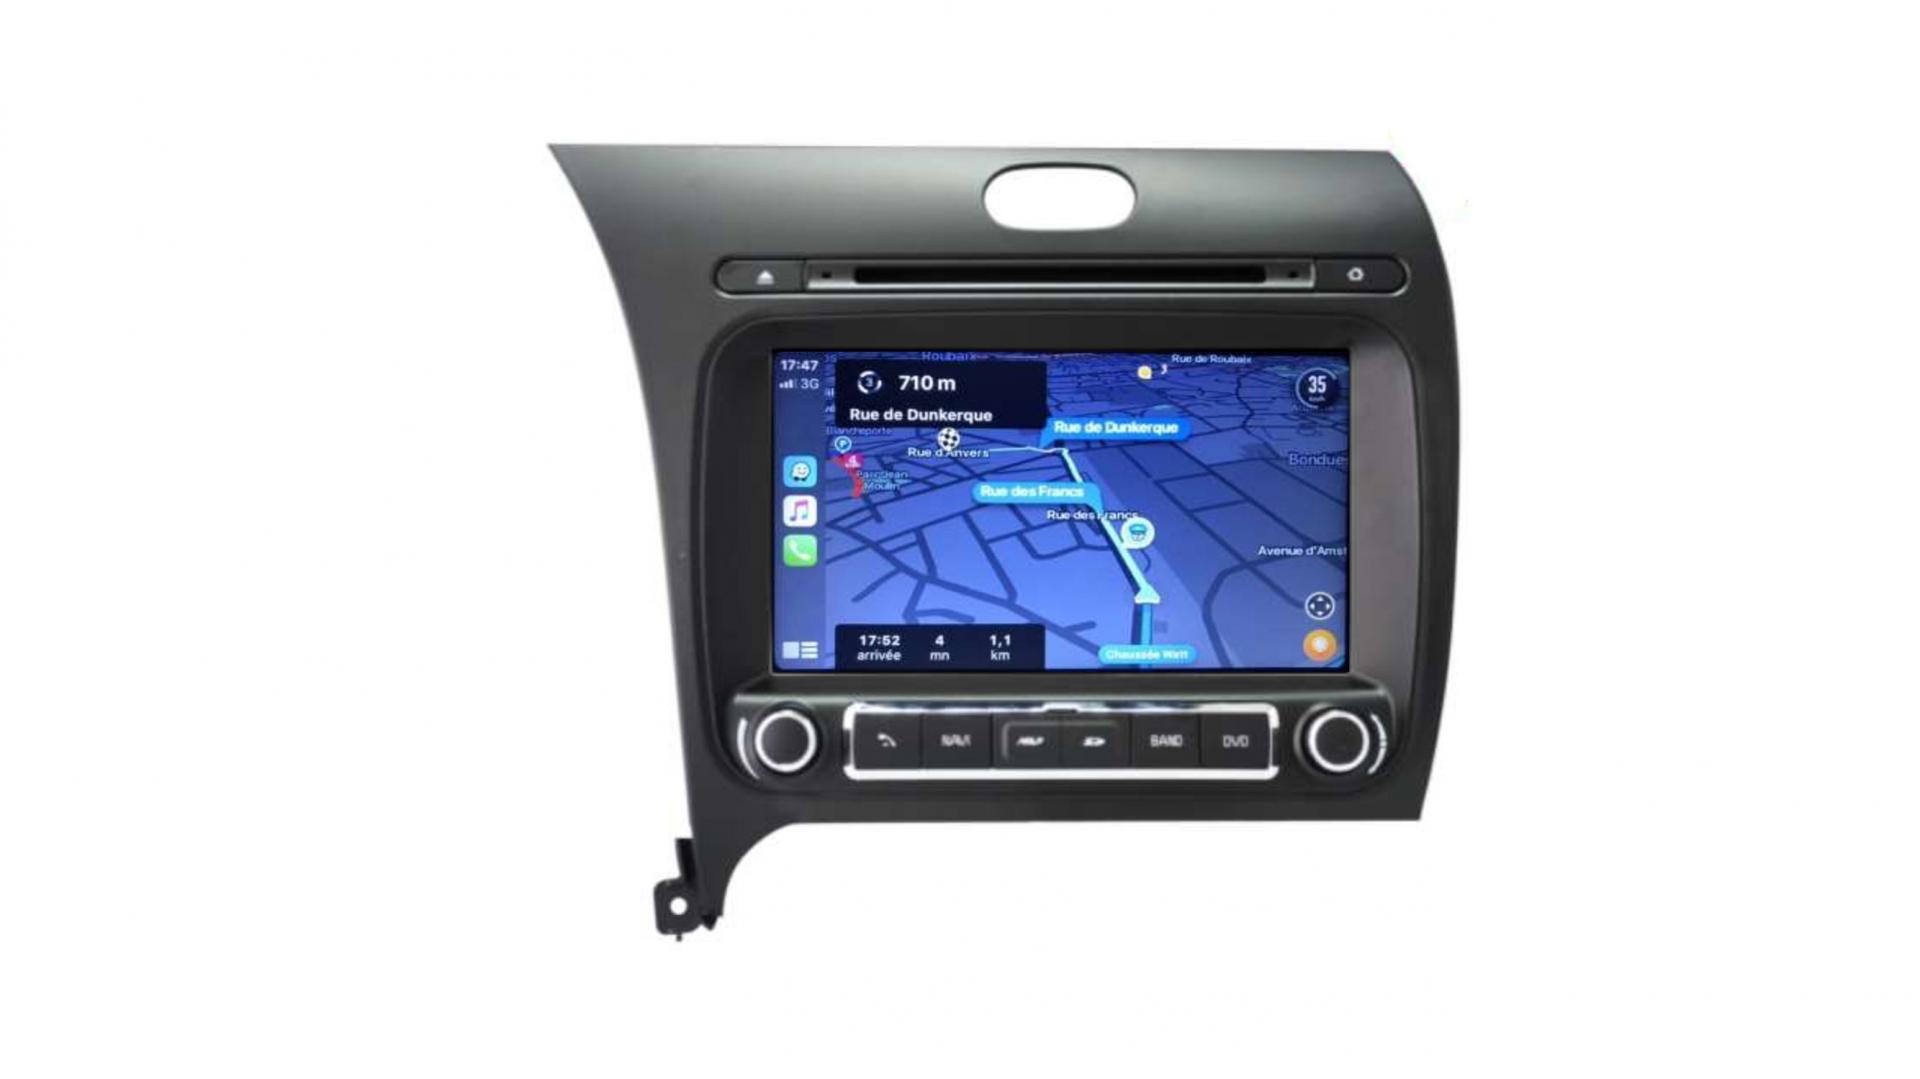 Autoradio androi d auto carplay gps bluetooth kia k3 depuis 2013 3